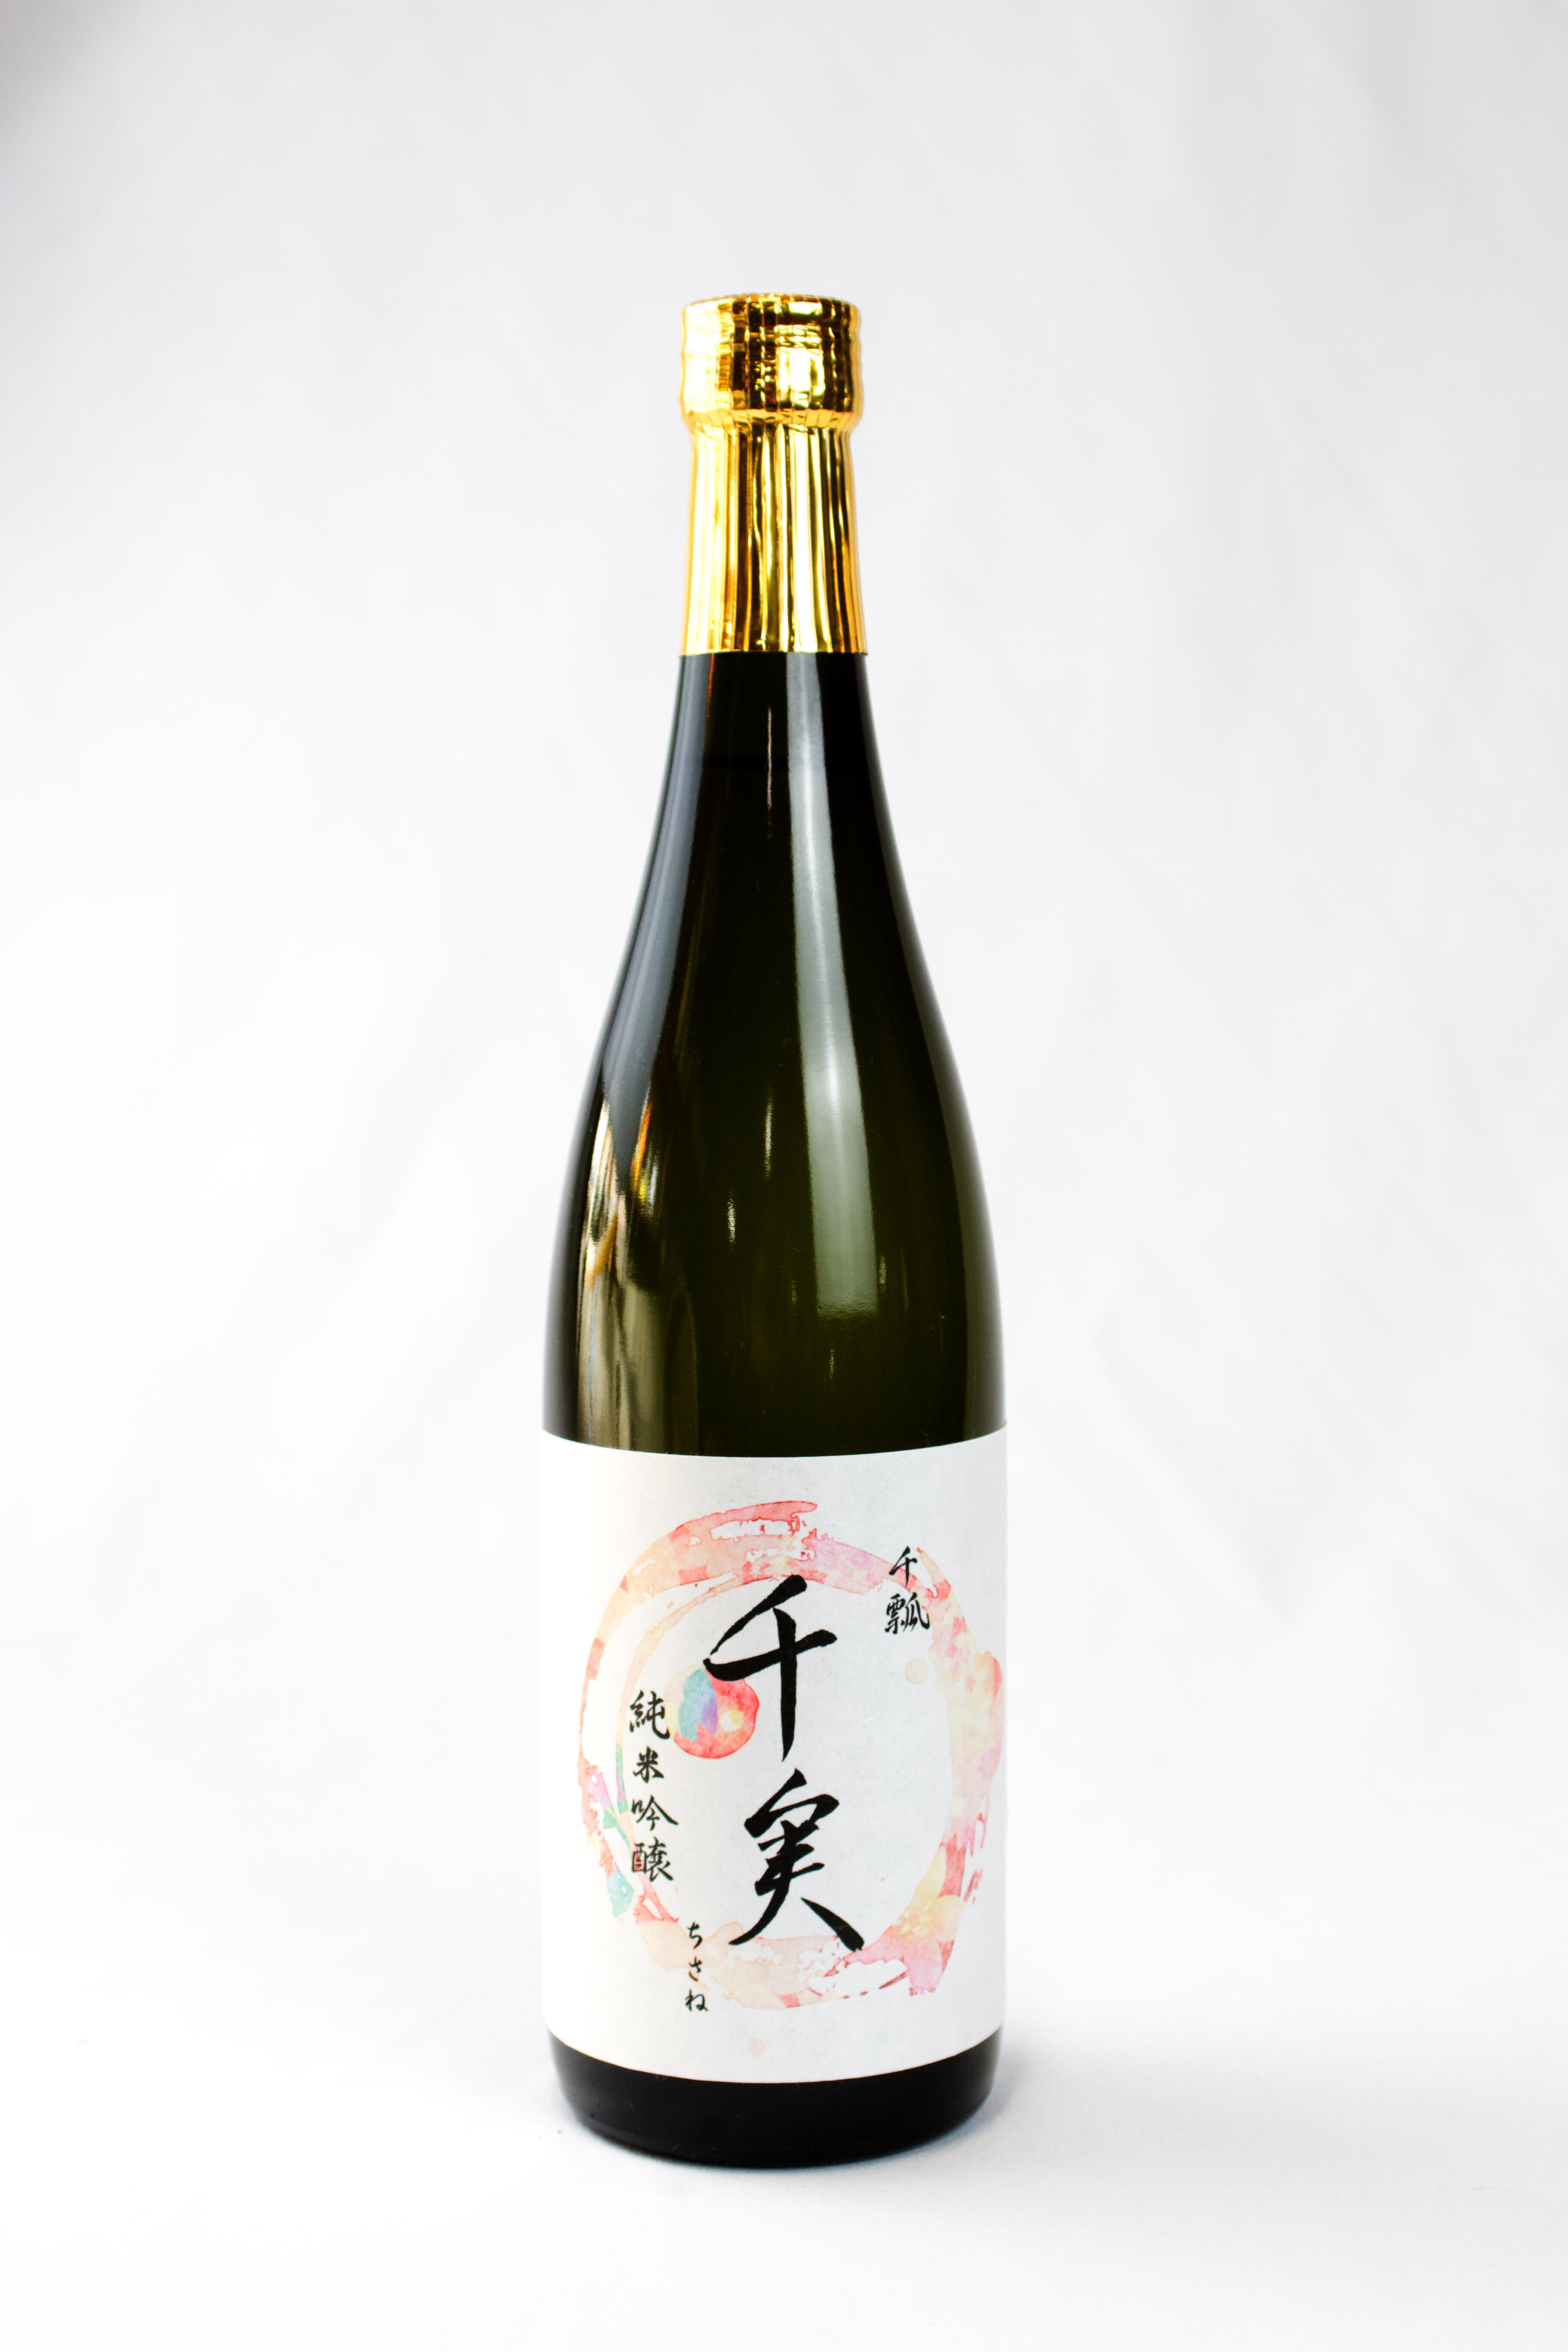 名城大学で微生物学を専攻した杜氏見習い・後藤 実和さん（農学部応用生物化学科卒）が酒質設計から製造計画まで、初めて自ら考え醸した日本酒「千瓢 千実」